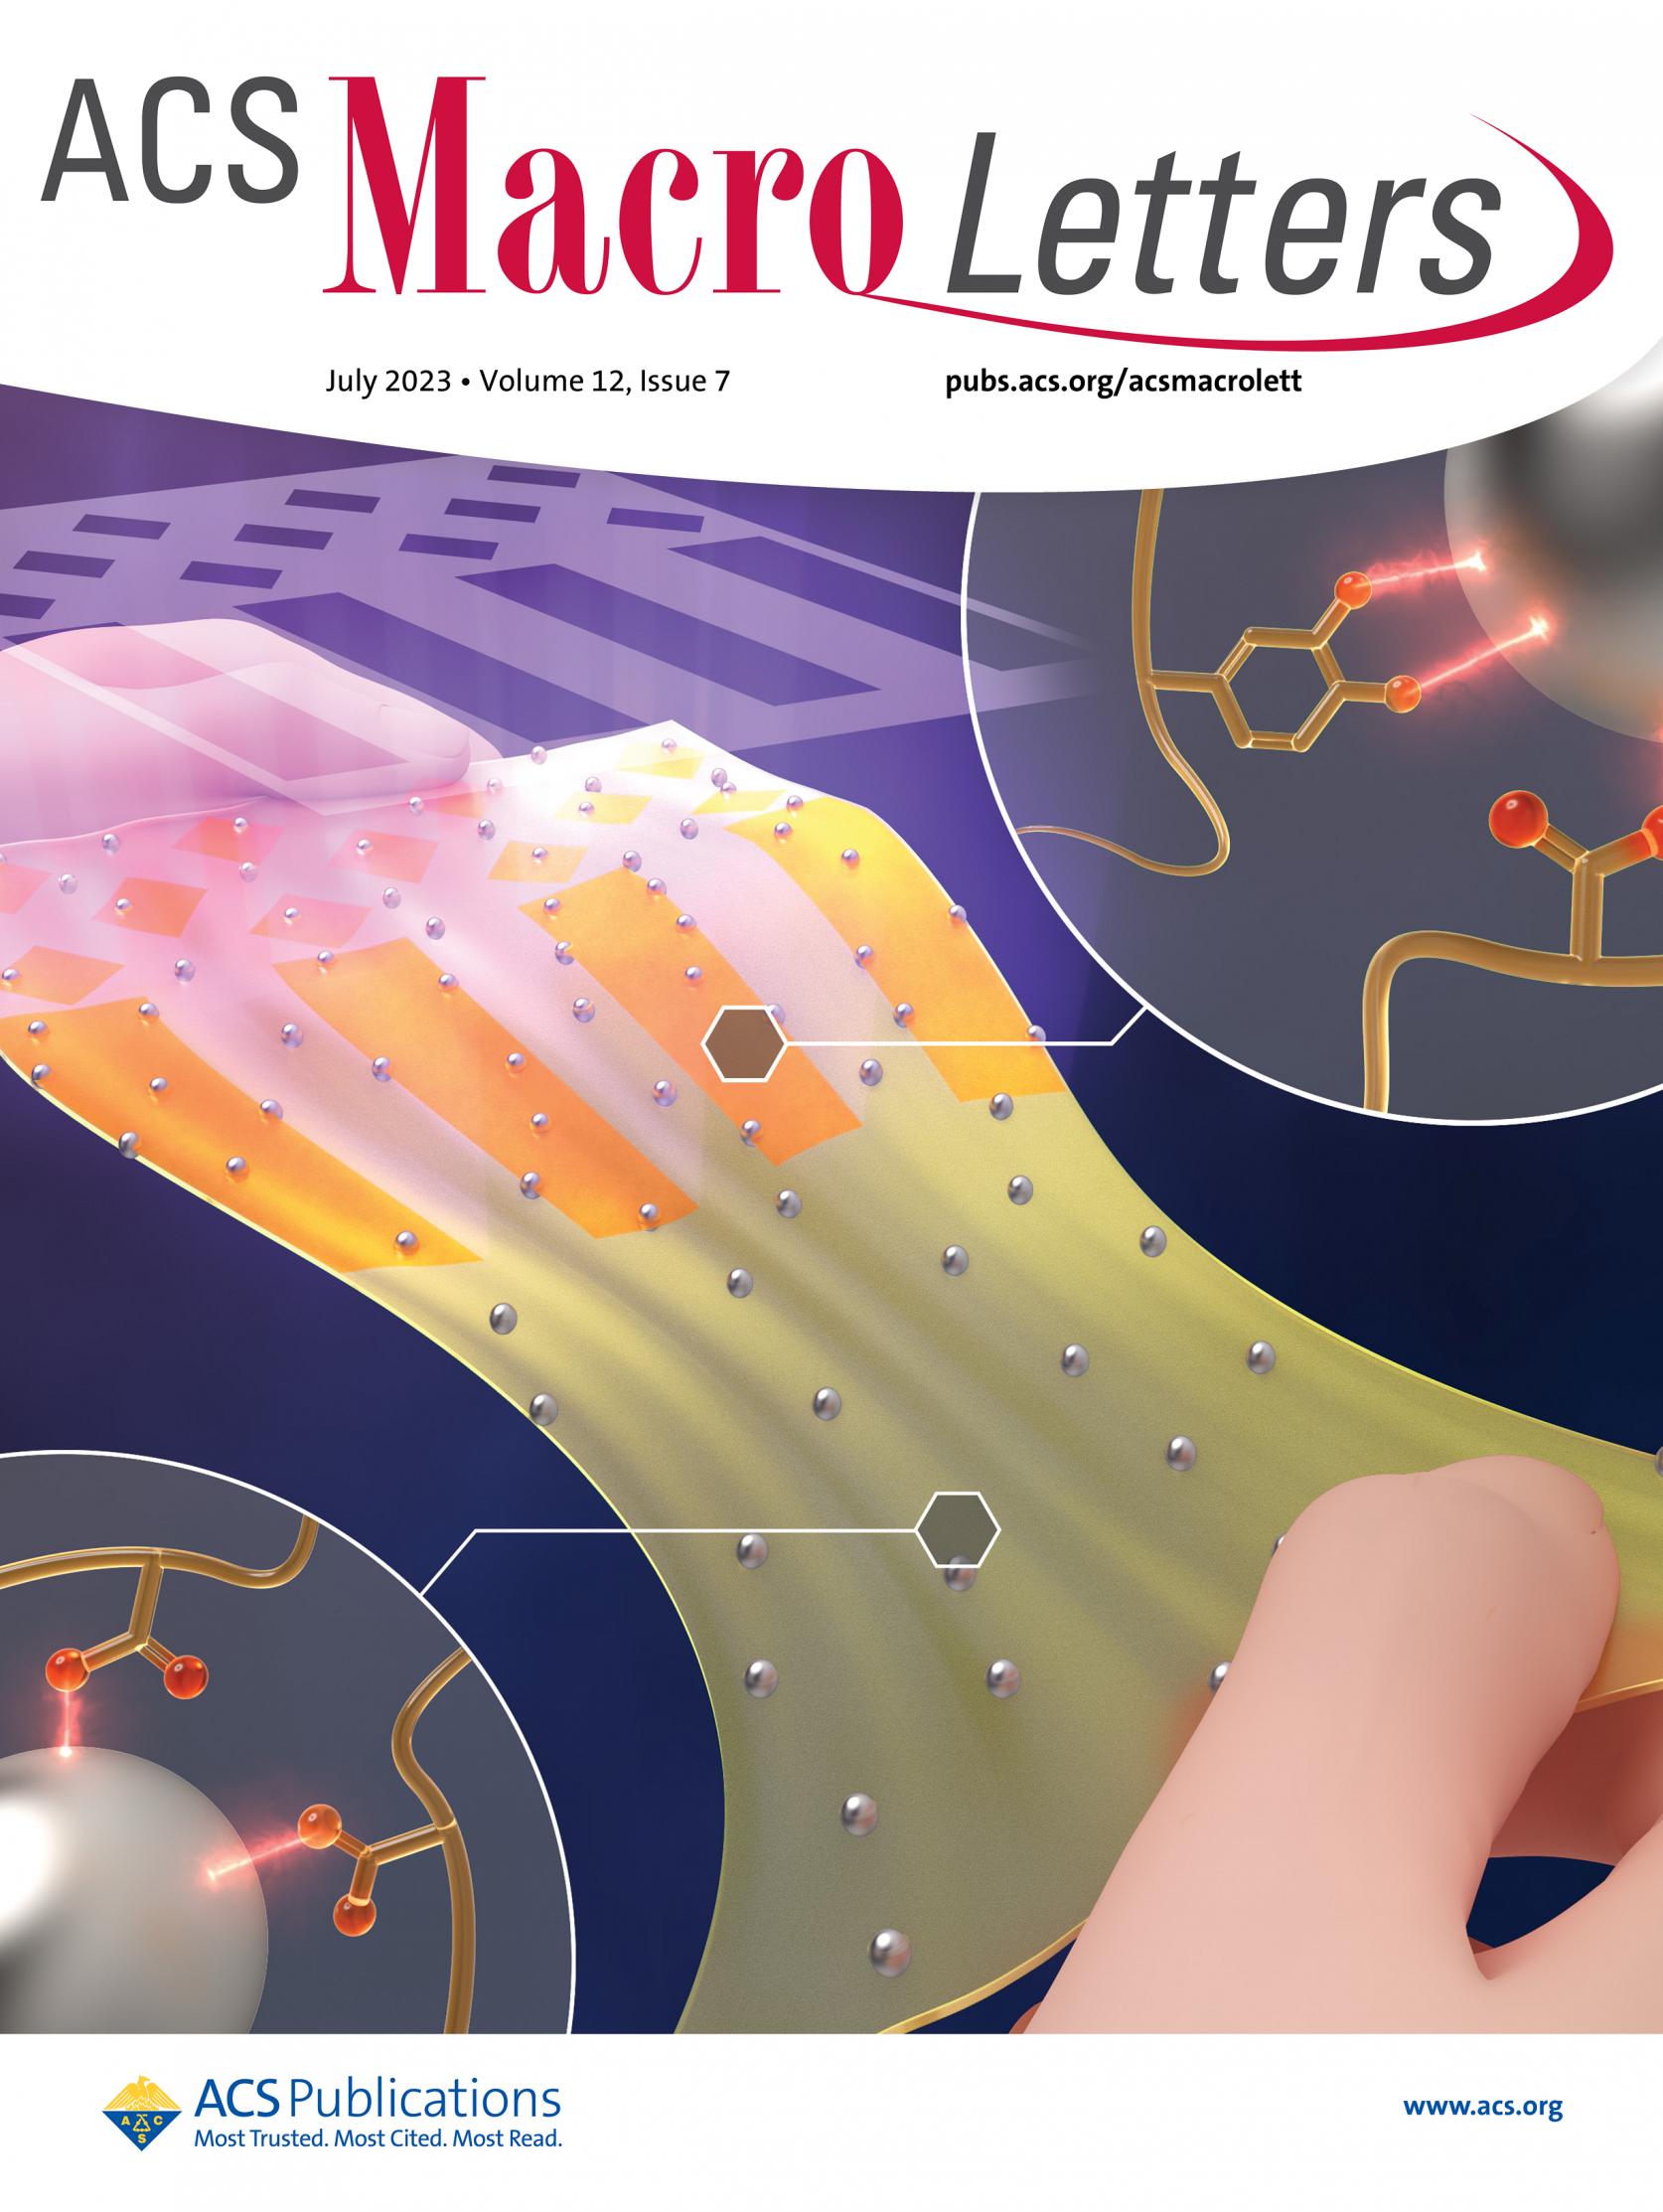  物質応用化学科 高分子工学研究室 伊掛浩輝准教授、神奈川大学 原秀太特別助教らの共同研究成果が、アメリカ化学会ACS Macro Letters誌のfront coverに採択されました。